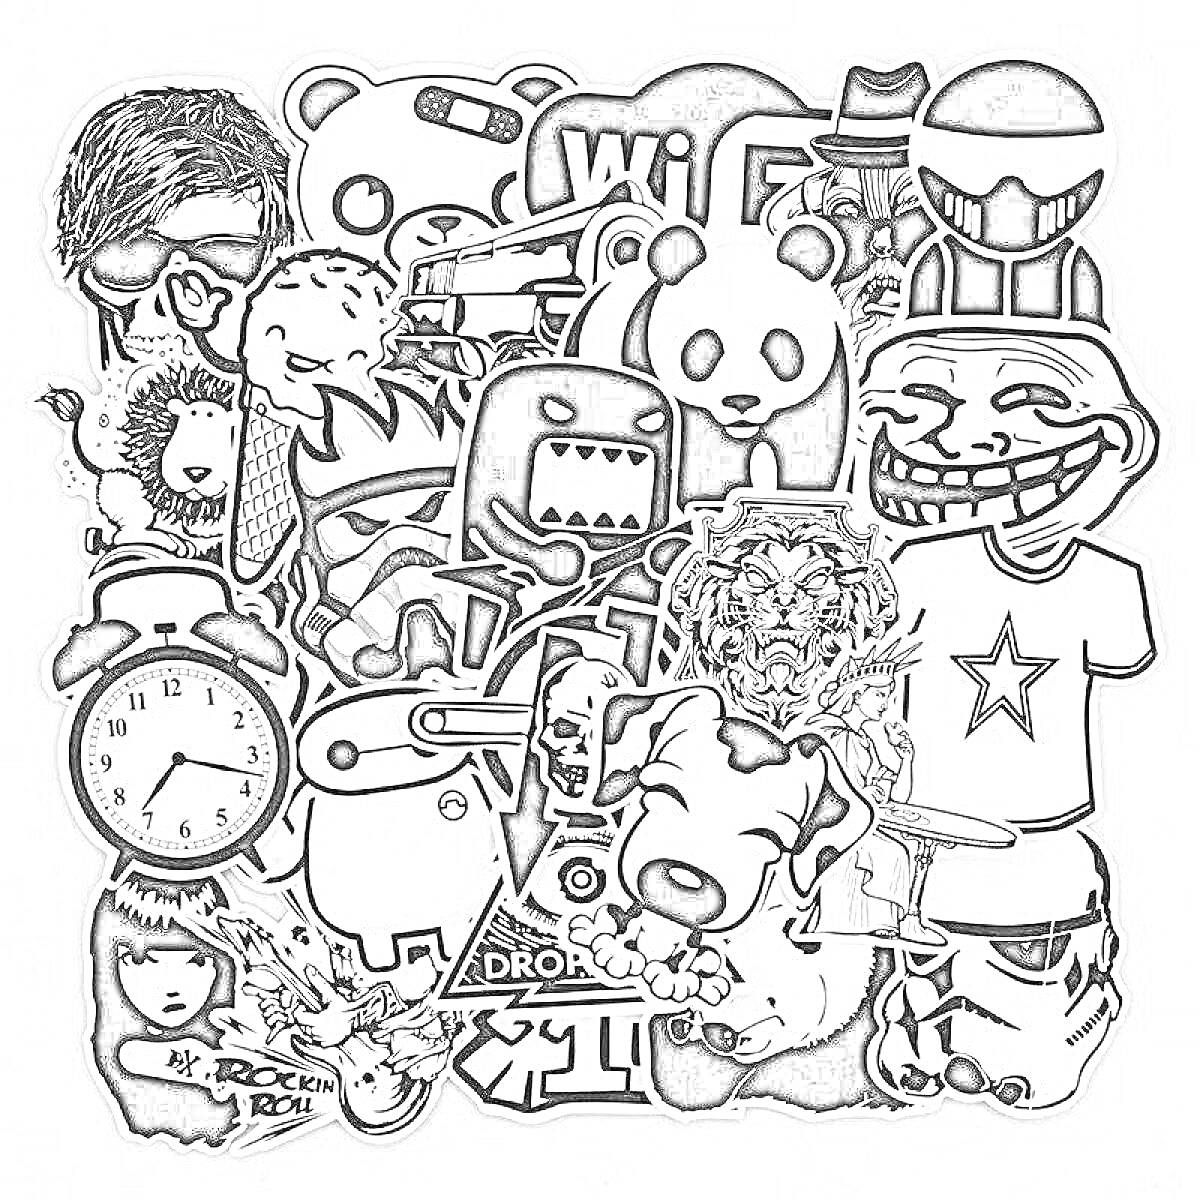 Раскраска Коллаж из разных персонажей, включающий медведя, дракона, панду, лису, часы, собаку, человекоподобных персонажей и другие элементы